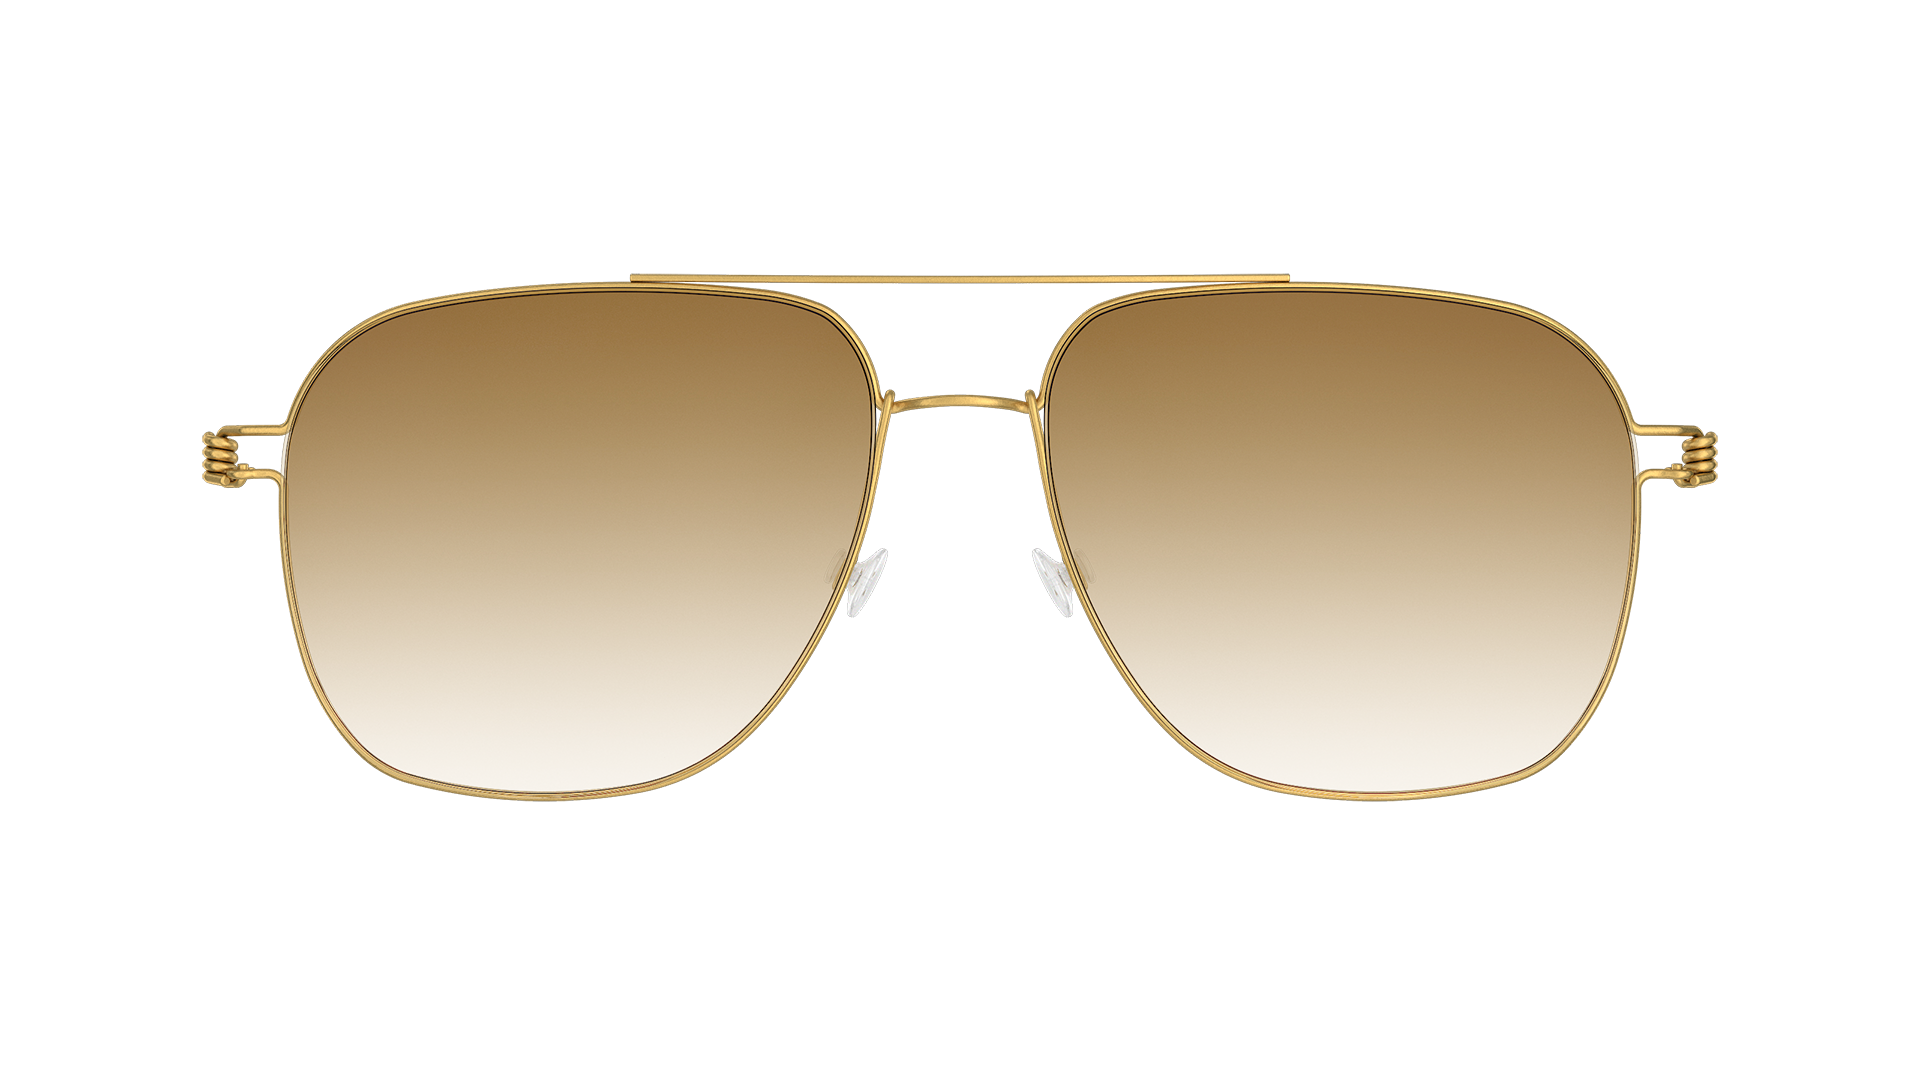 LINDBERG sun titanium Model 8210 round squared aviator sunglasses in gold tone featuring brown gradient lenses